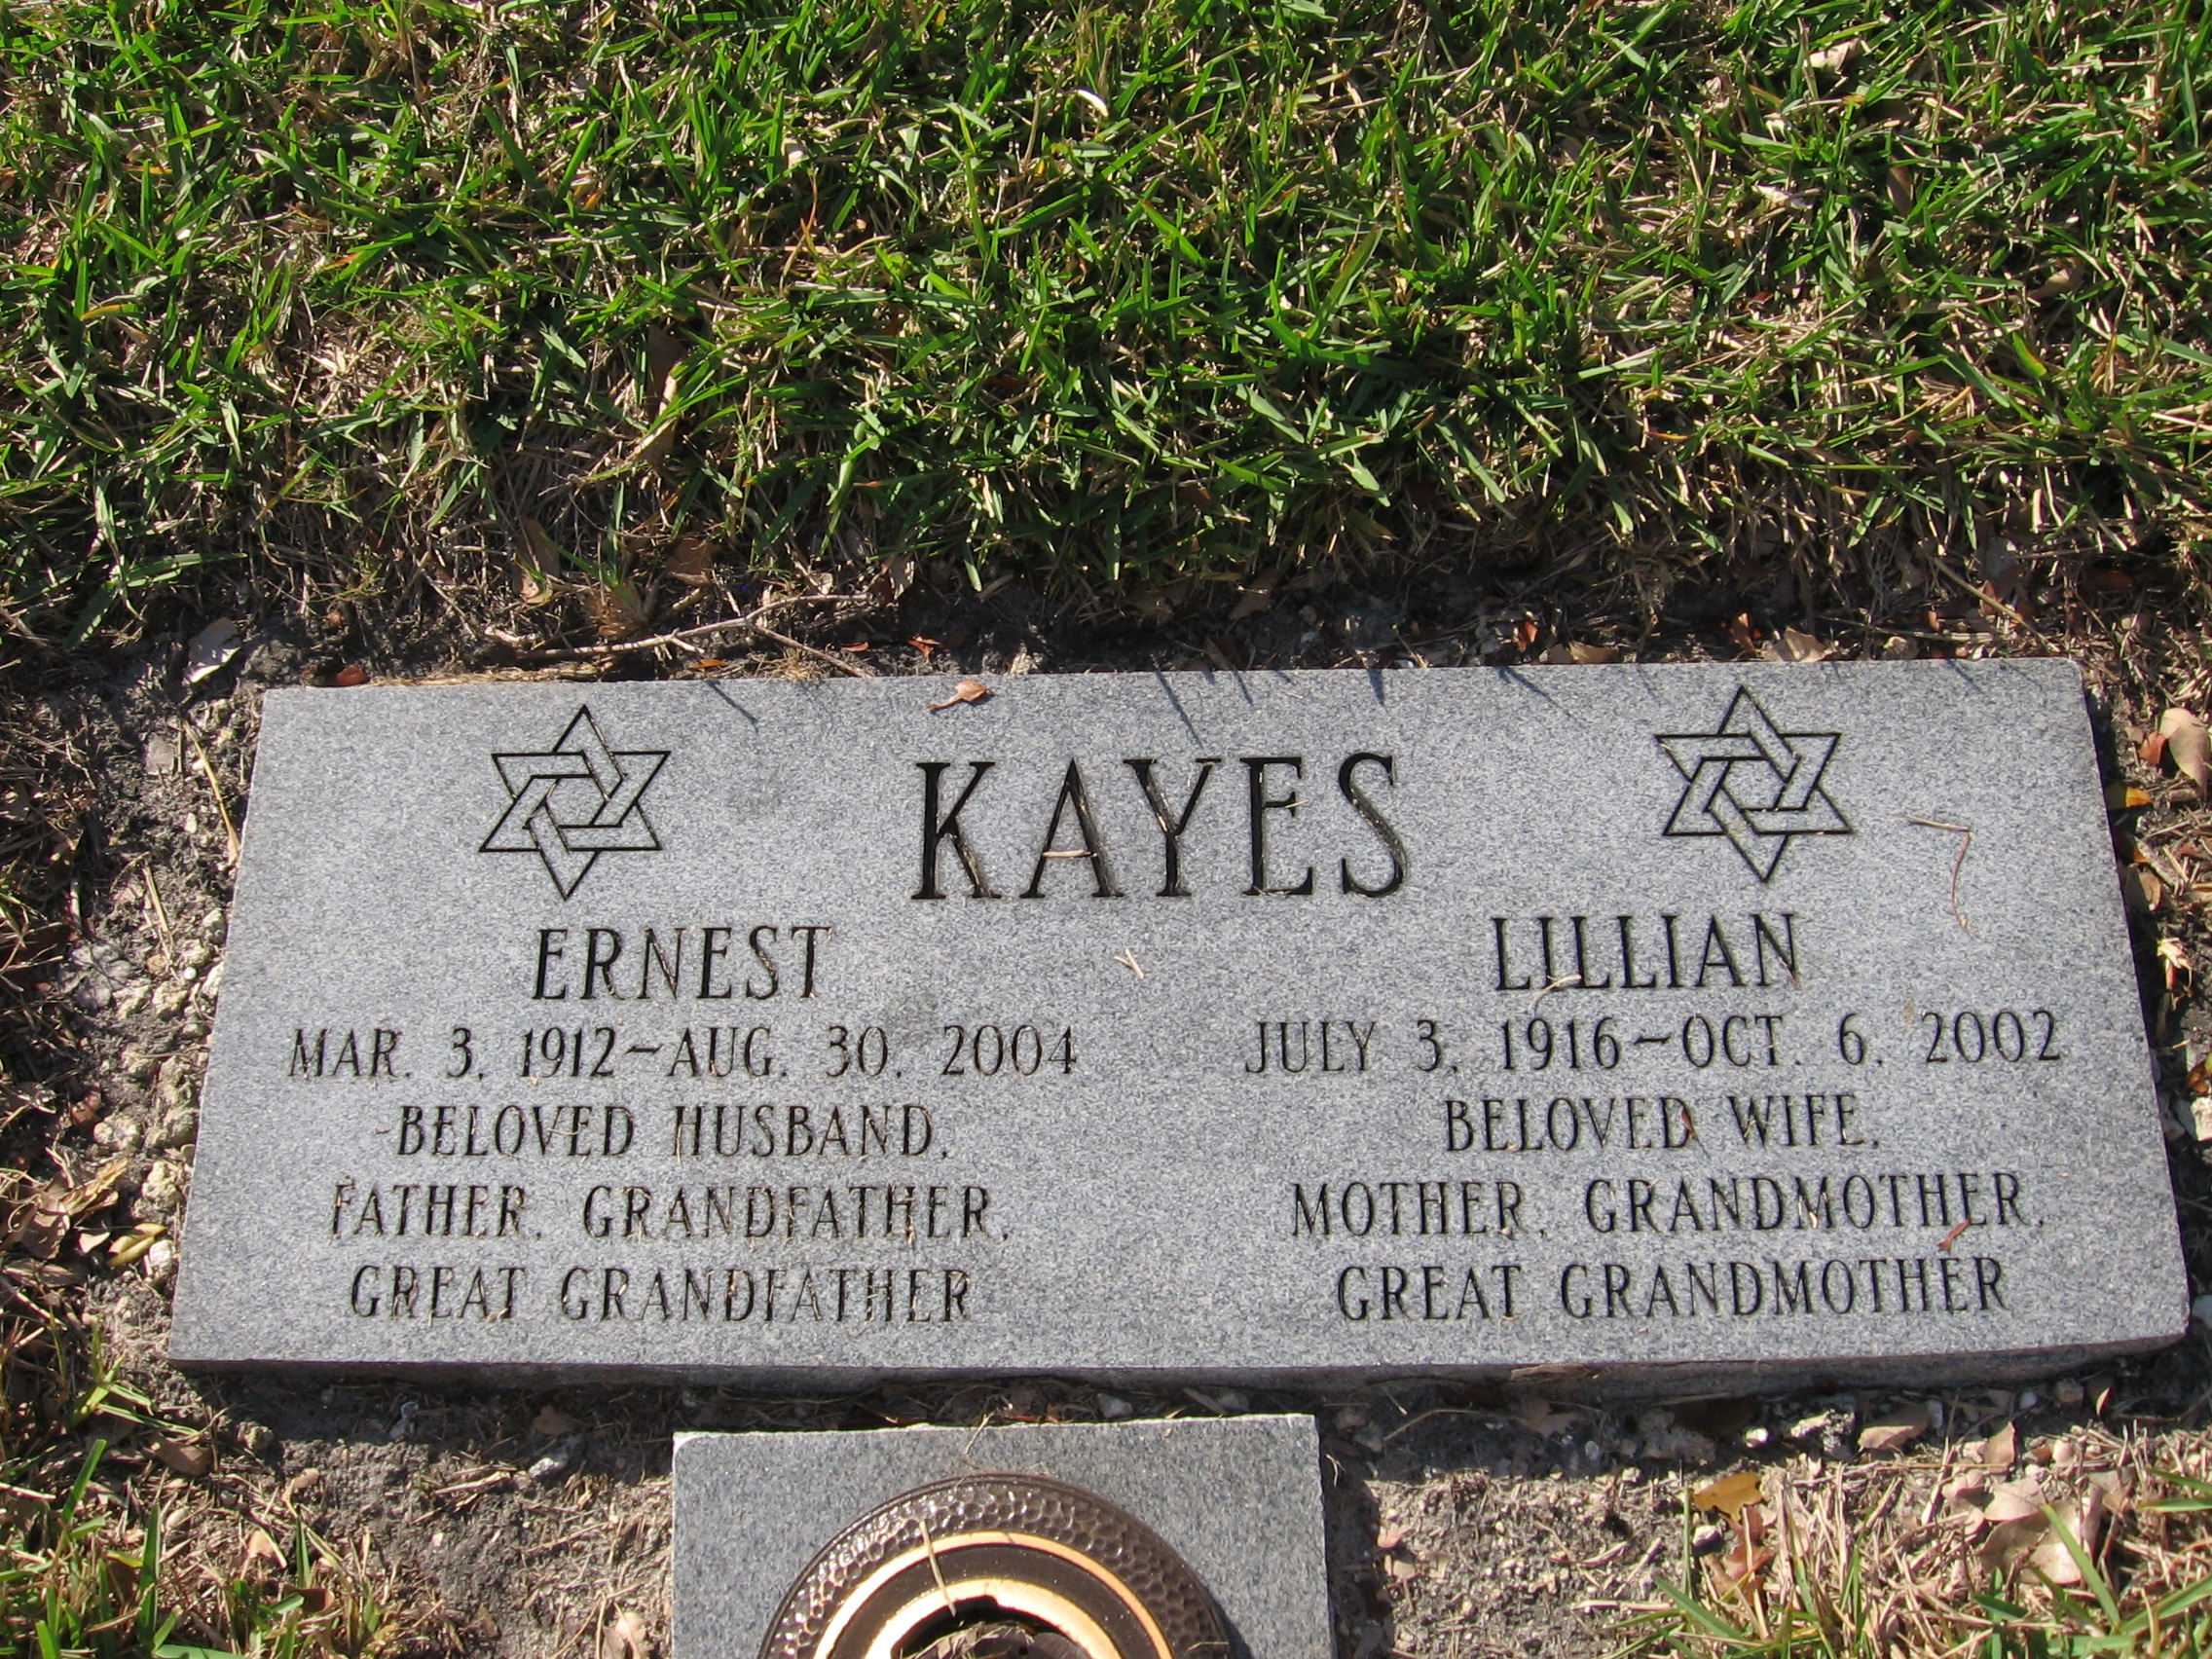 Lillian Kayes